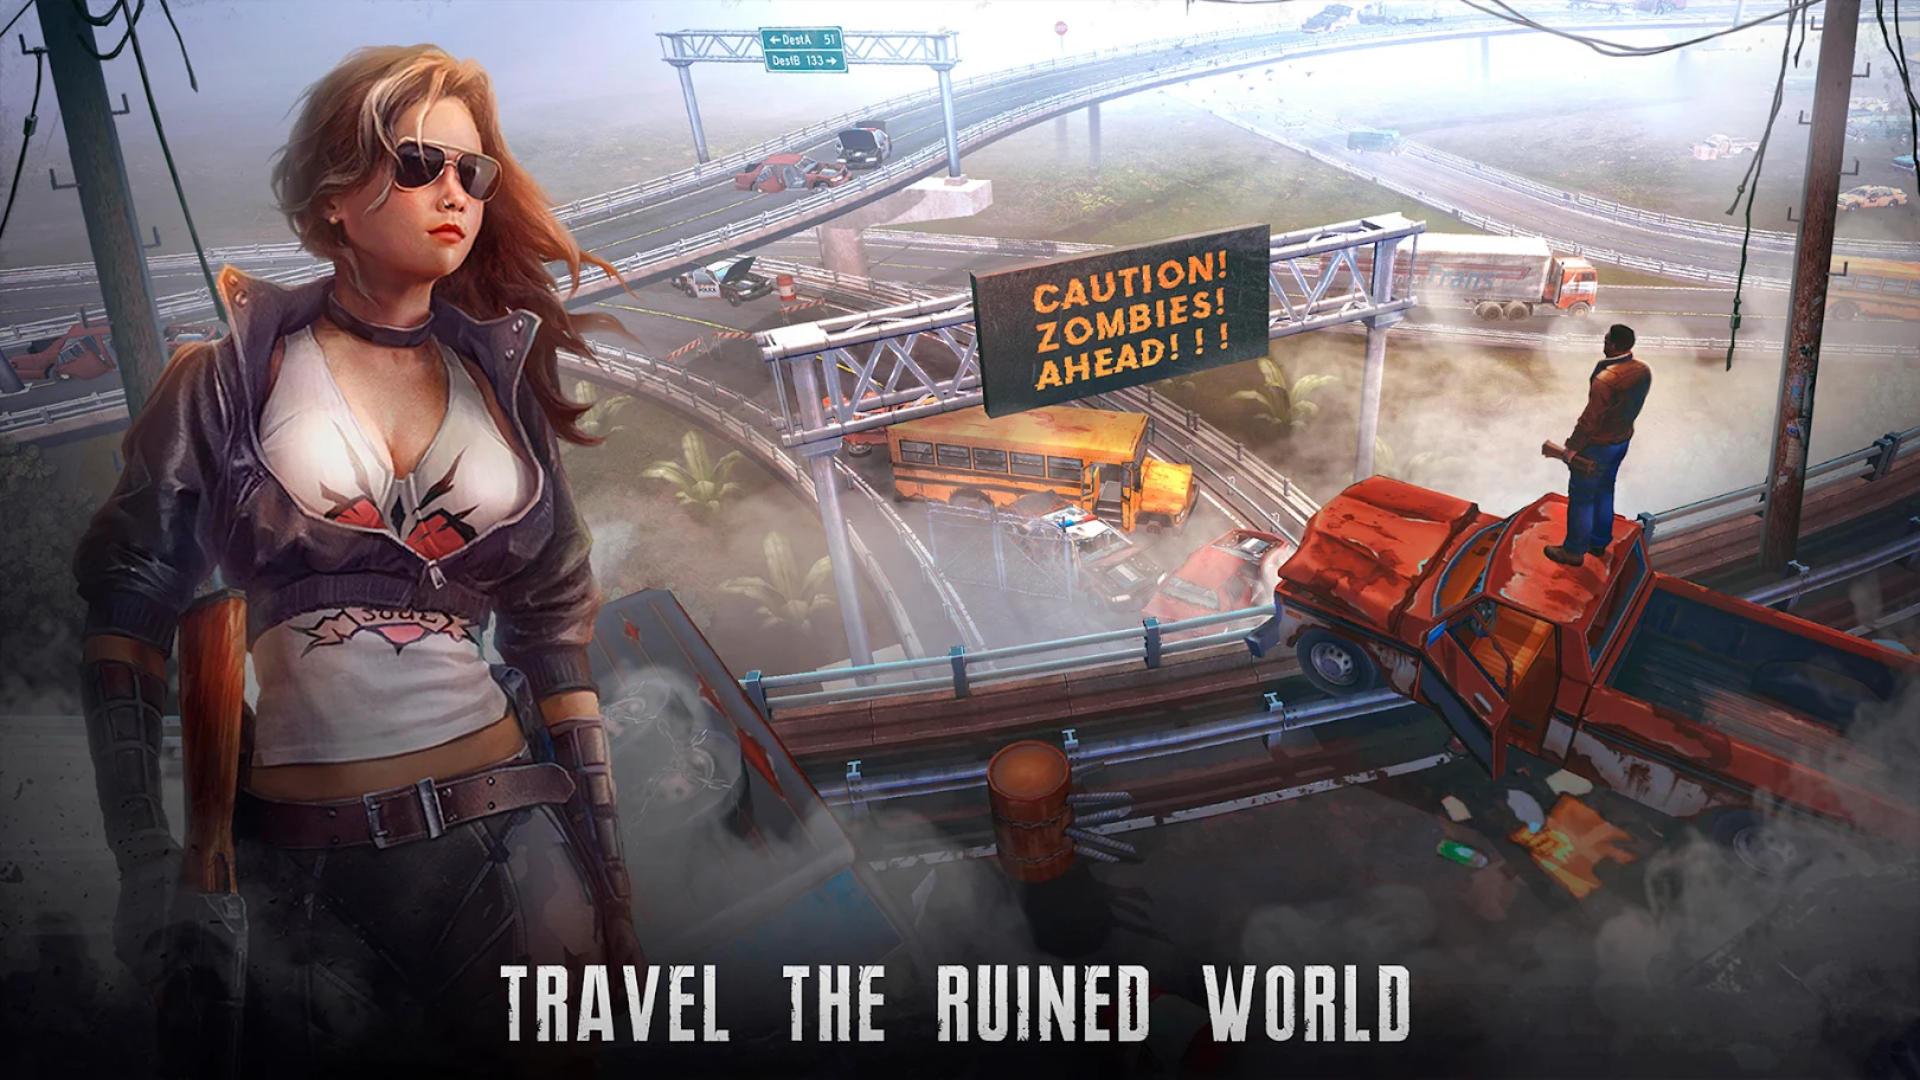 Beste overlevelsesspill på mobil: Live or Die. Bildet viser et bilde av en dame i solbriller i nærheten av en forlatt motorvei, med teksten